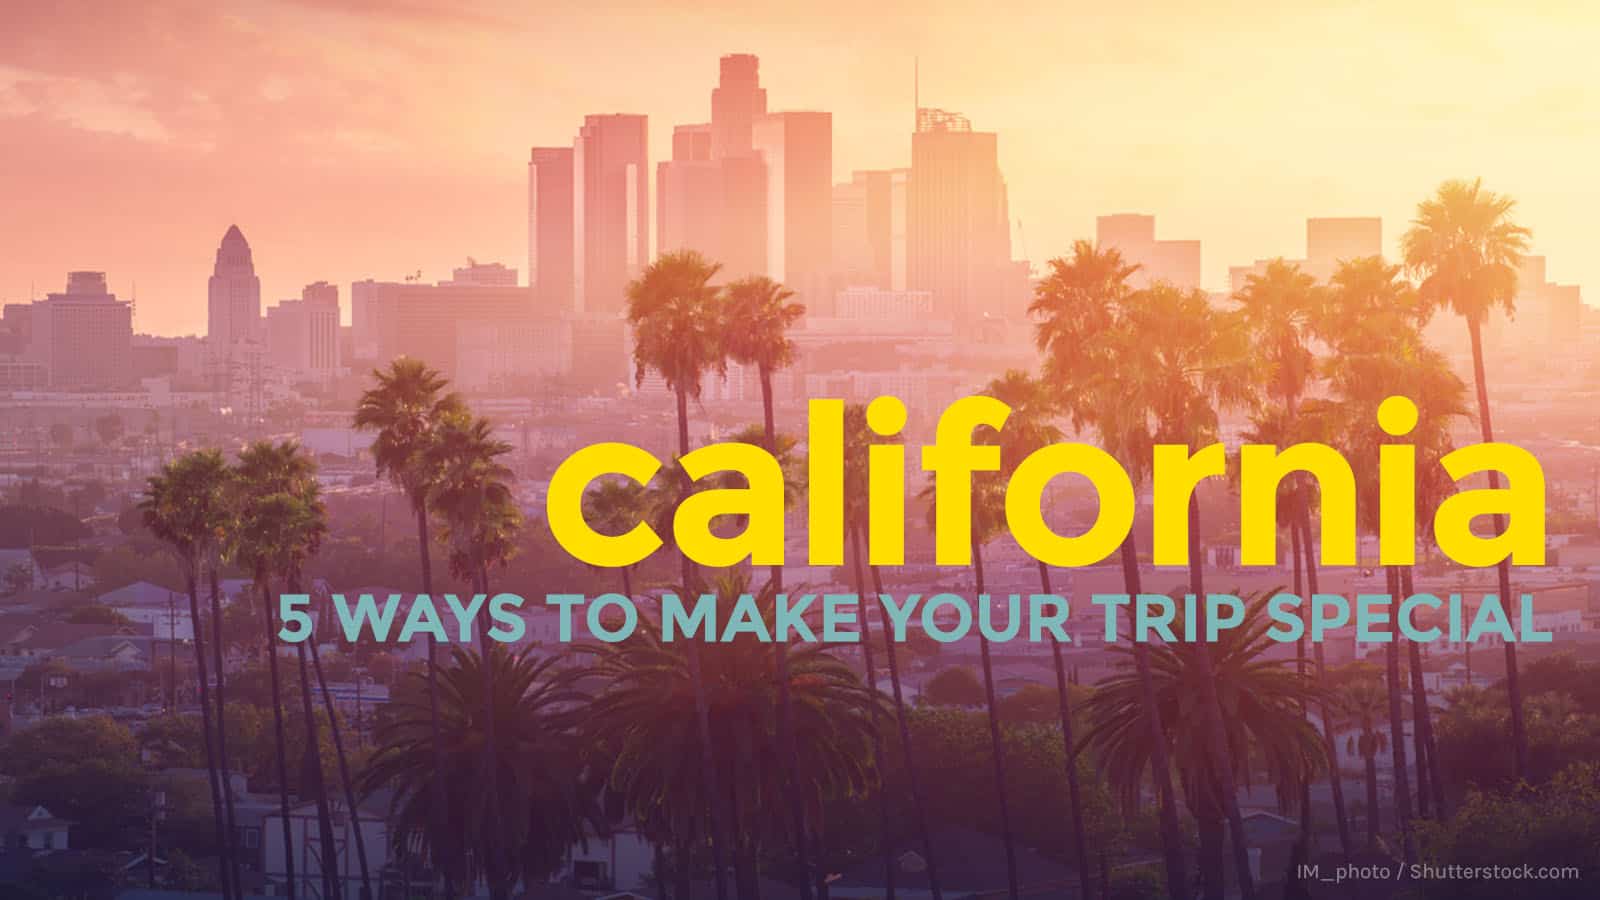 加州:让你的旅行更特别的5种方法